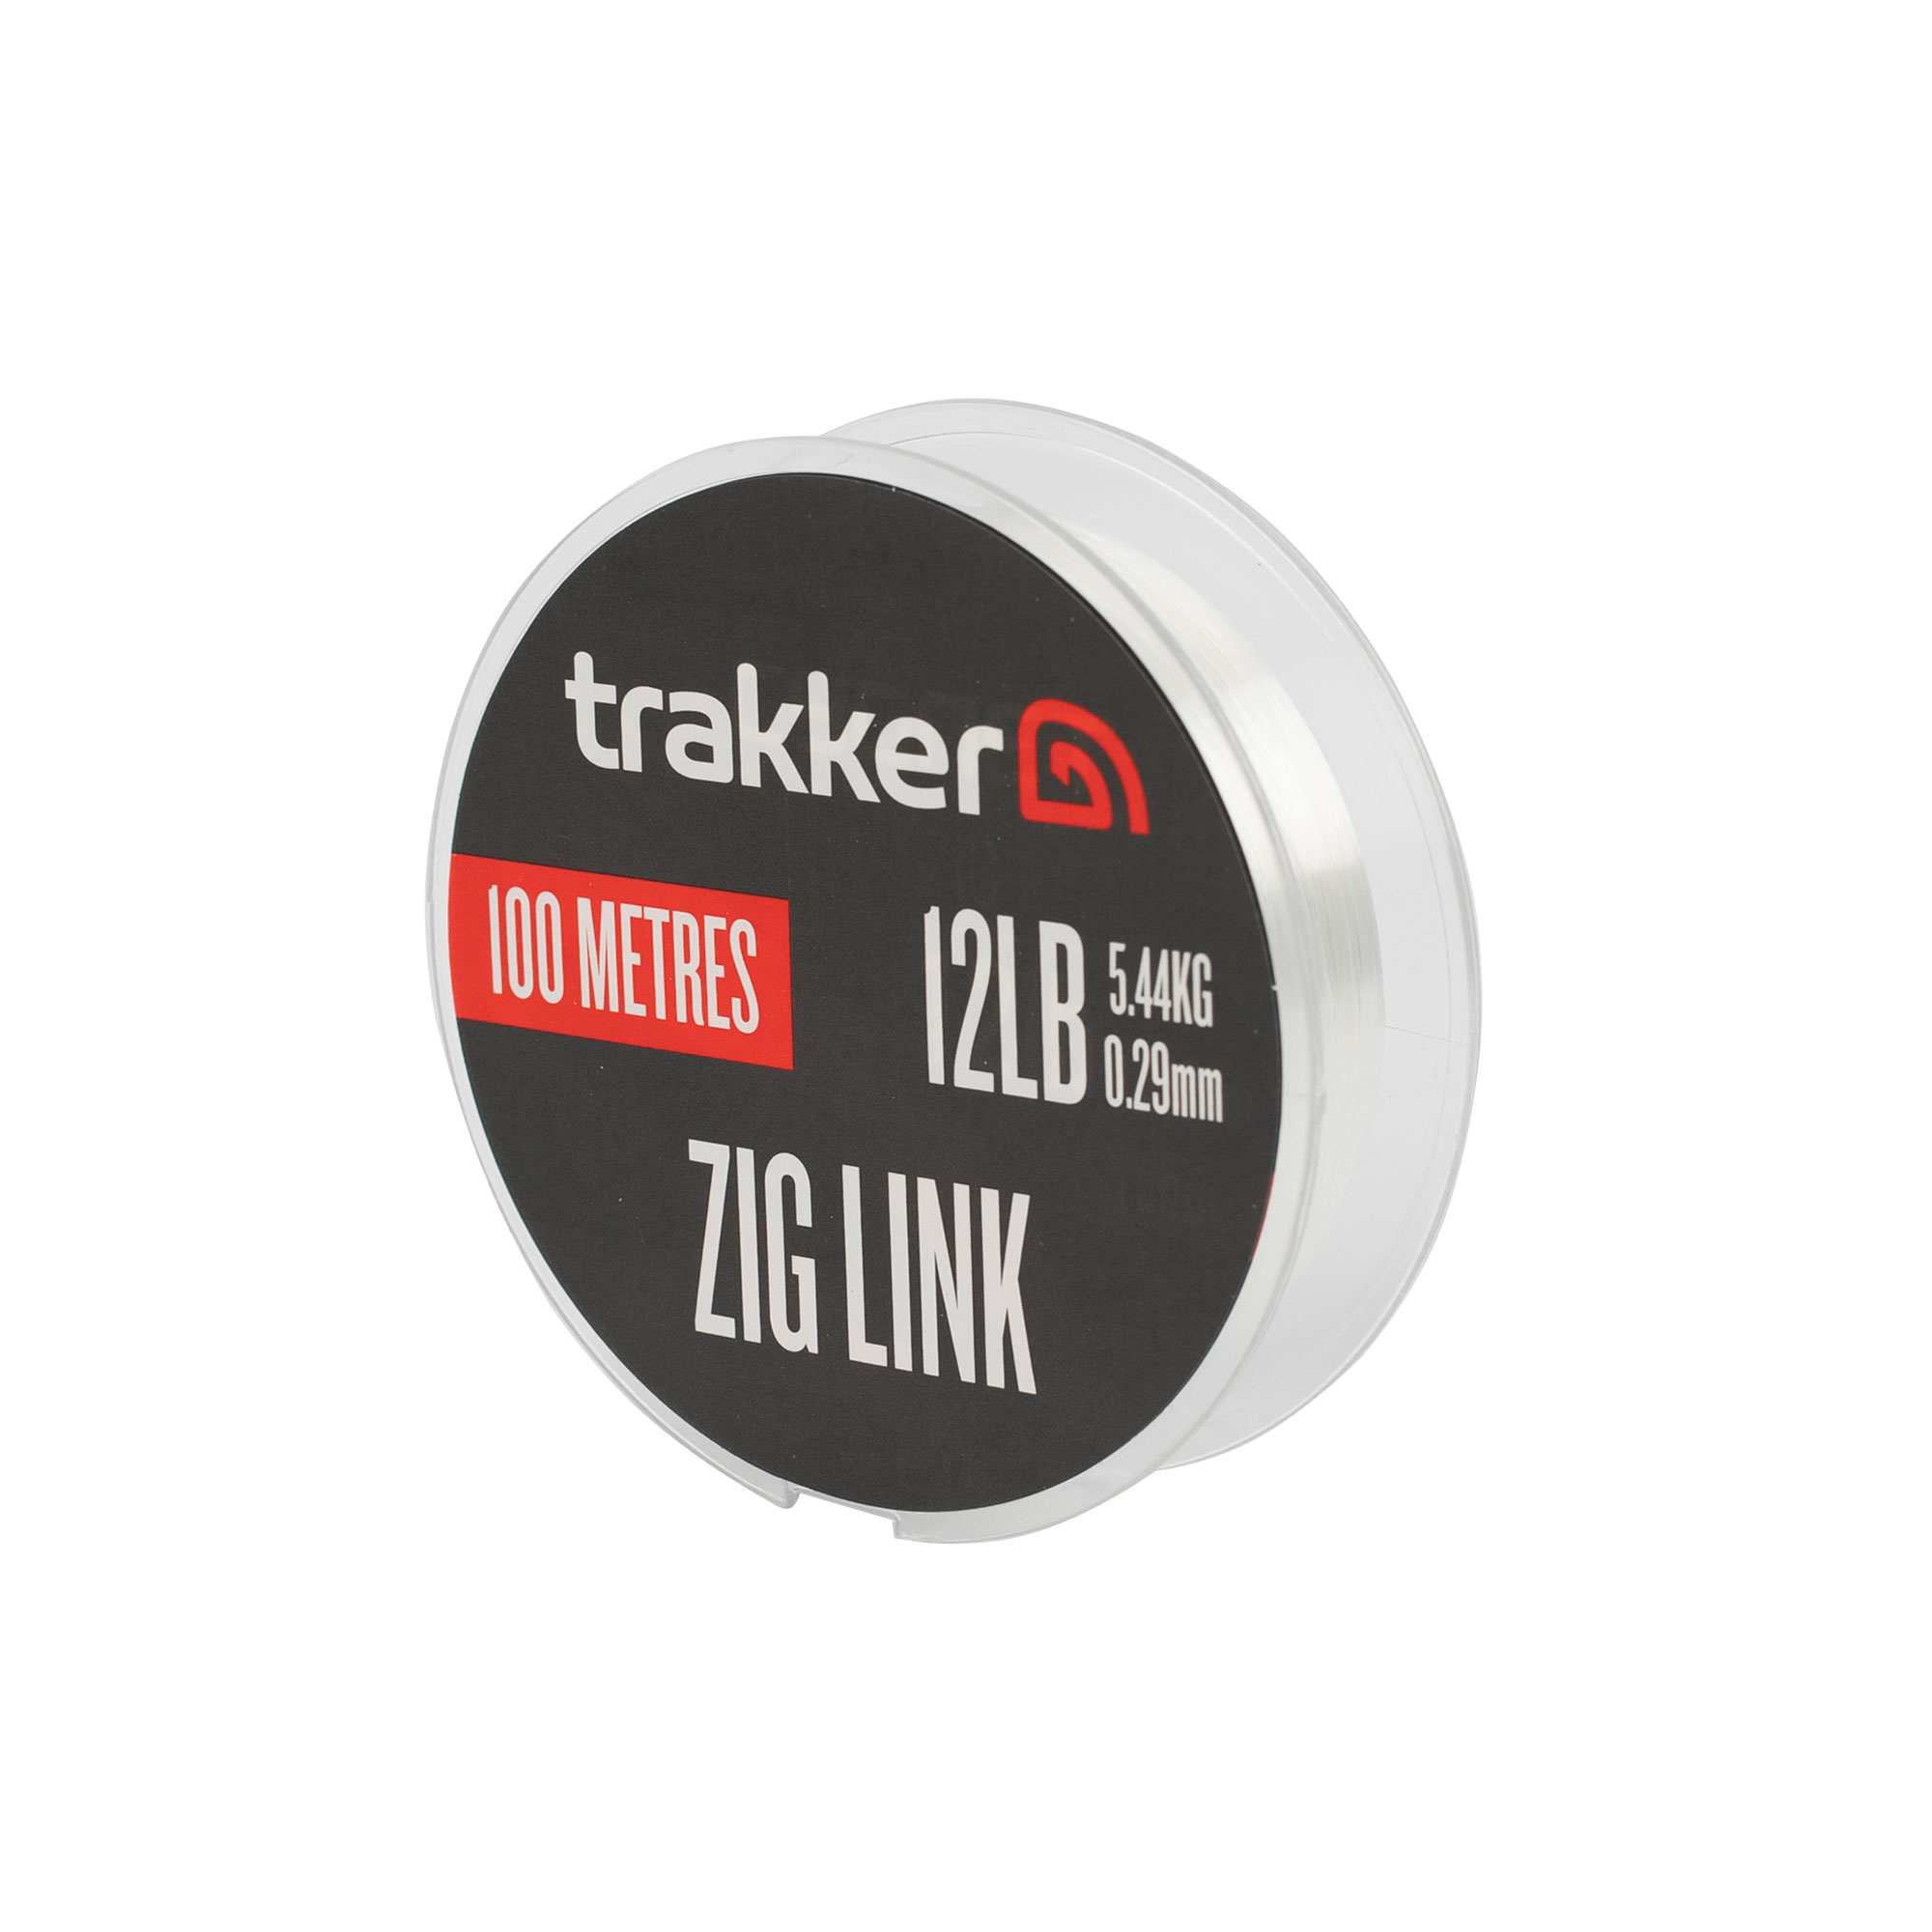 Trakker Zig Link (12lb)(5.44kg)(0.29mm)(100m) TPx5